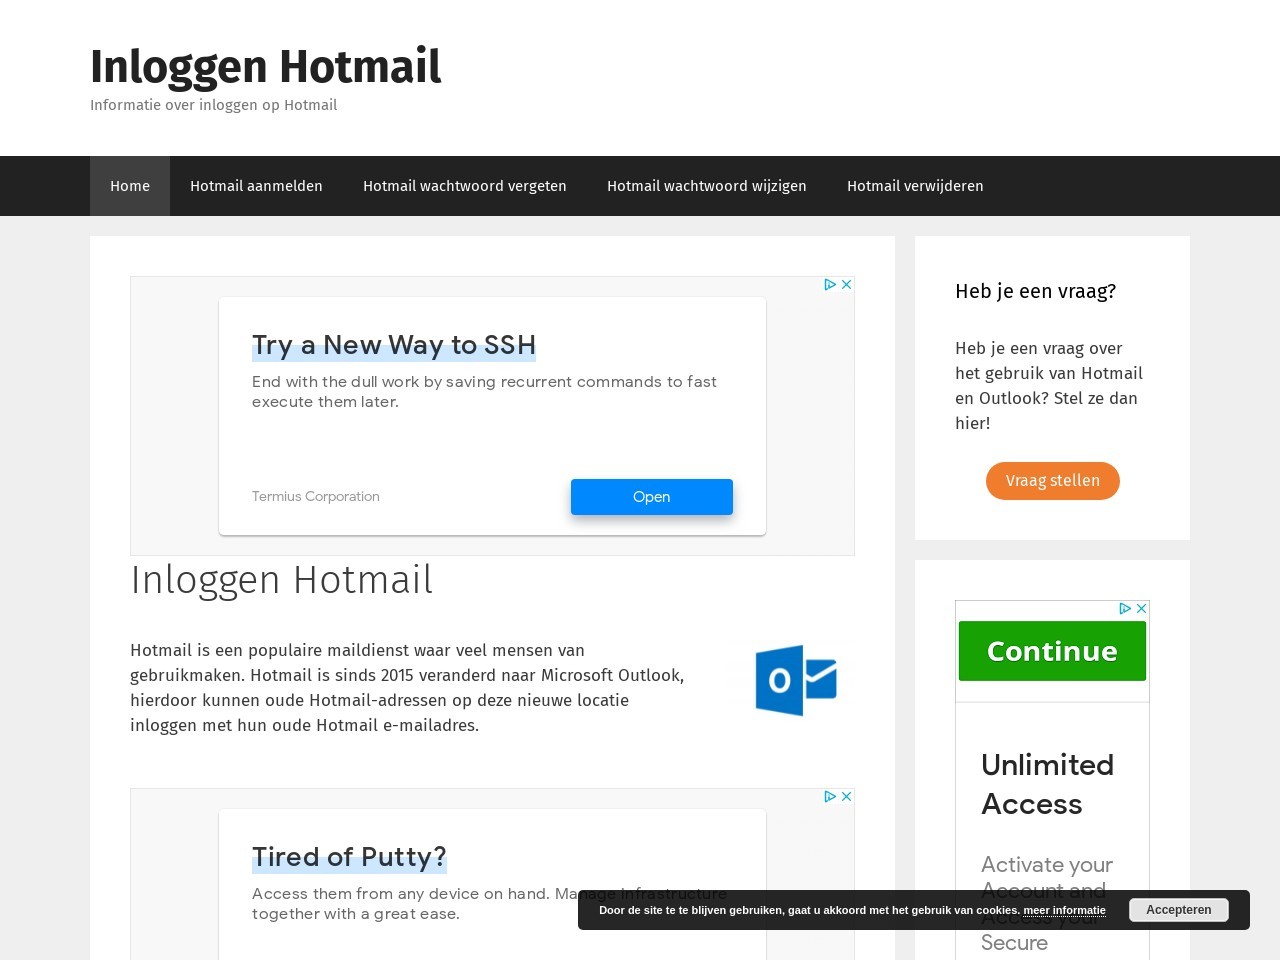 Inloggen Hotmail - Informatie over inloggen op Hotmail/Outlook